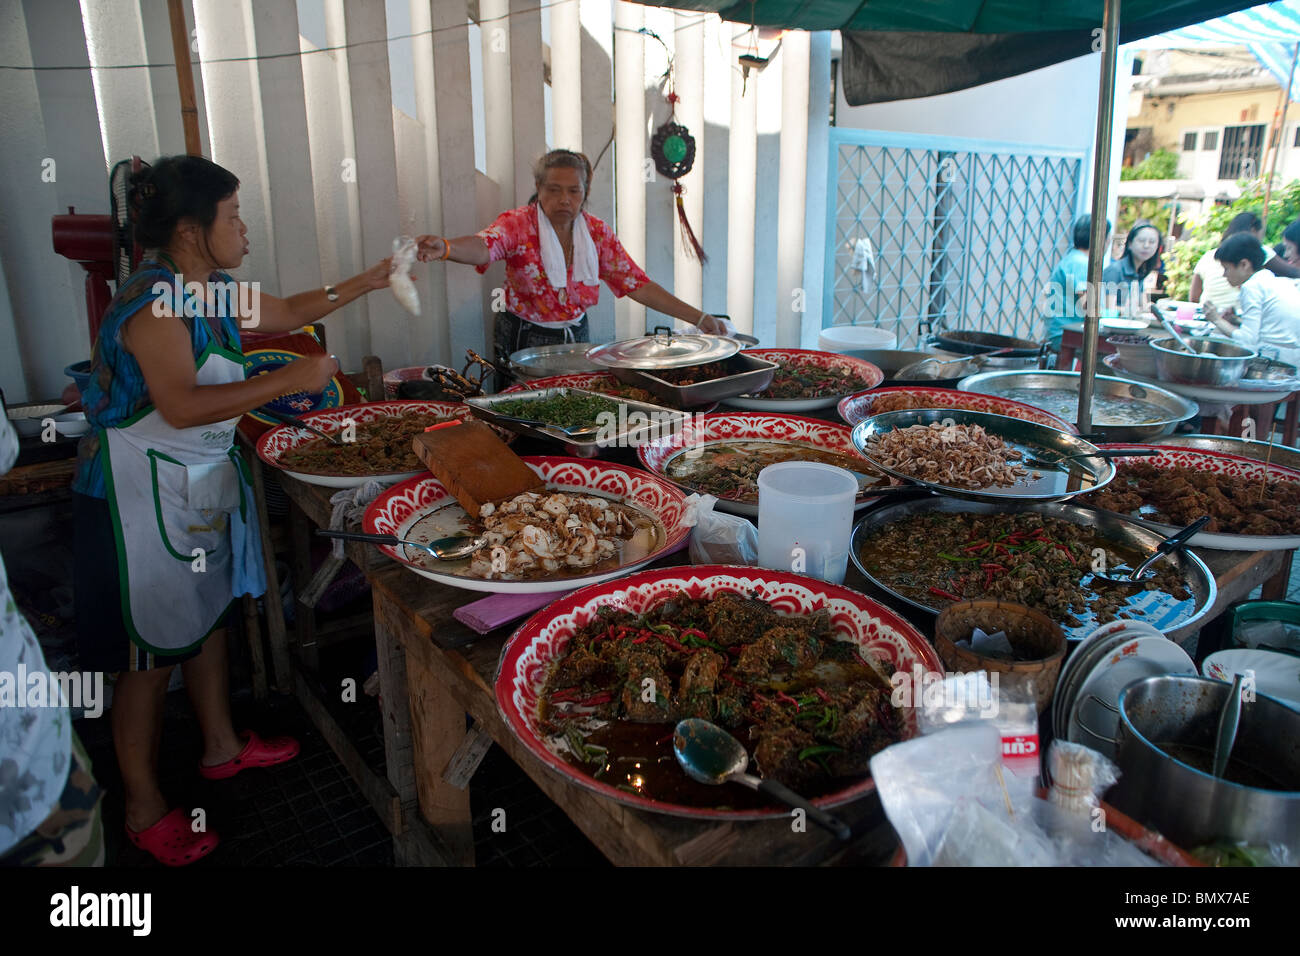 Food avec diverses spécialités et plaques de cuisine thaï et deux femmes en service alors que les clients de manger sont visibles à droite Banque D'Images